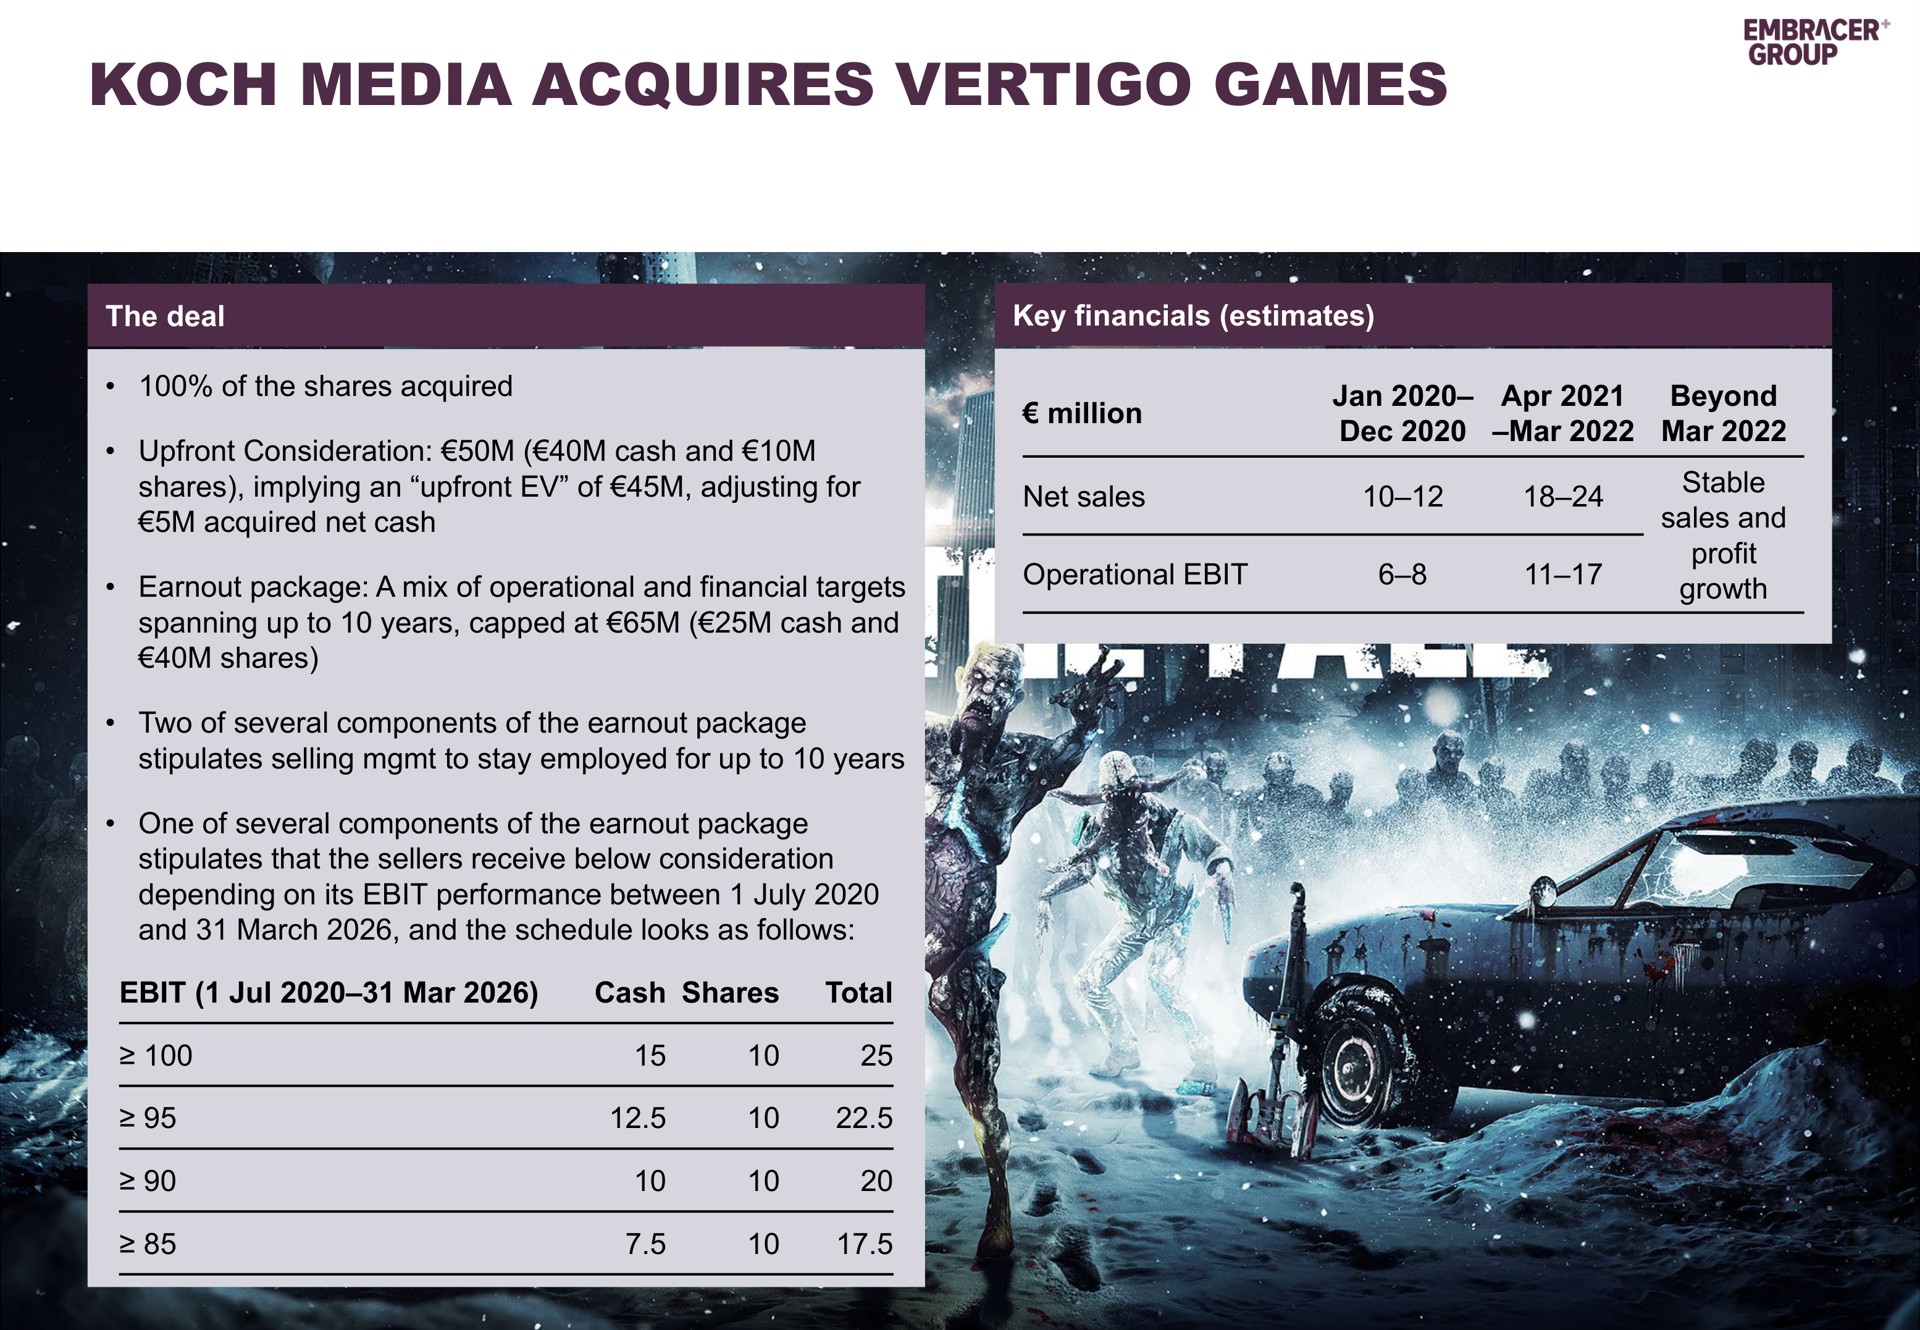 media acquires vertigo games | Embracer Group